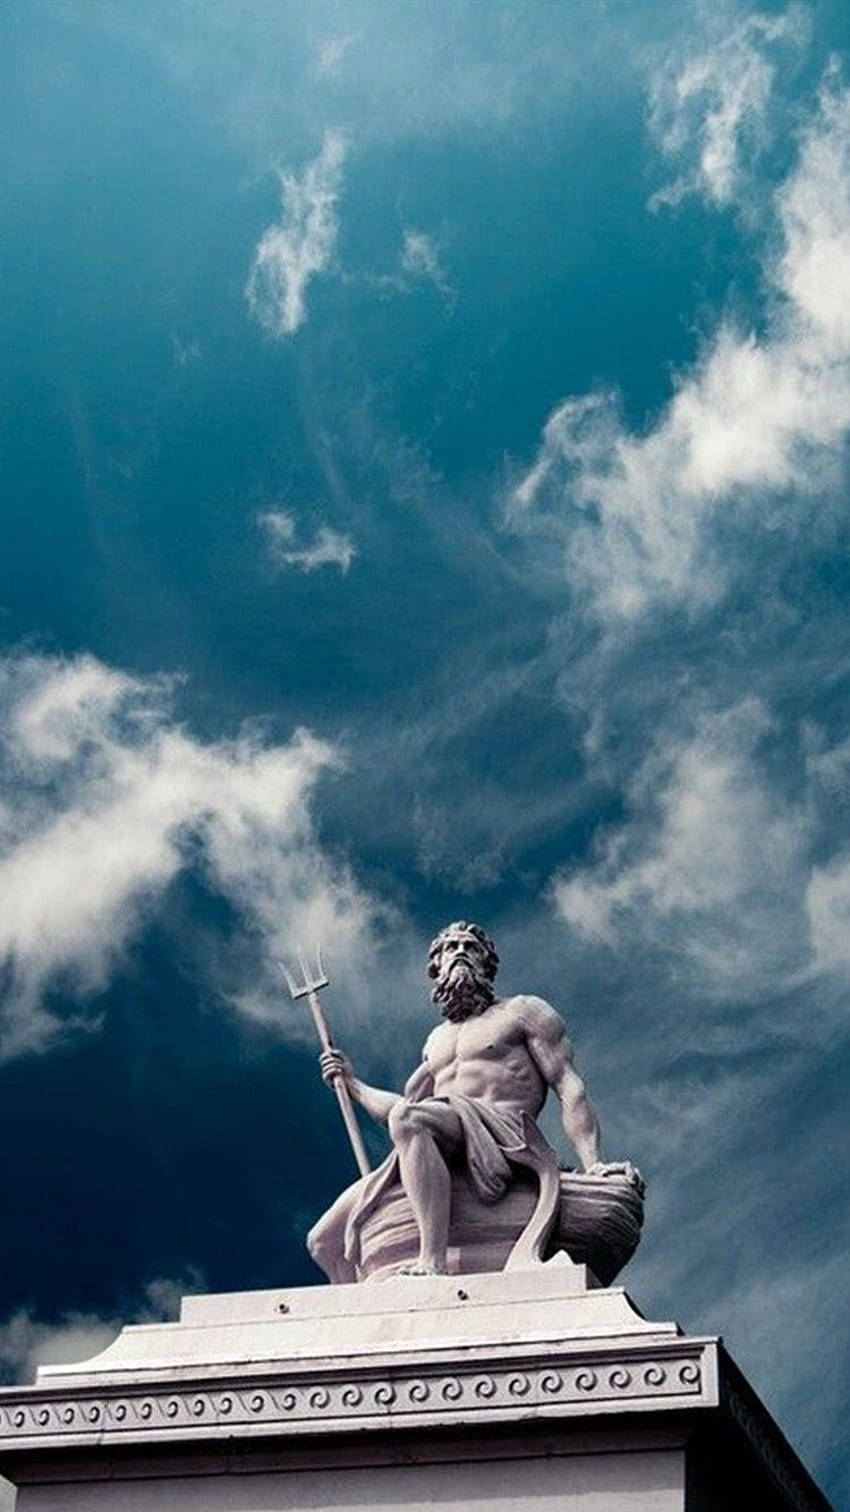 Apollo (Mythology) - Greek Mythology - Zerochan Anime Image Board